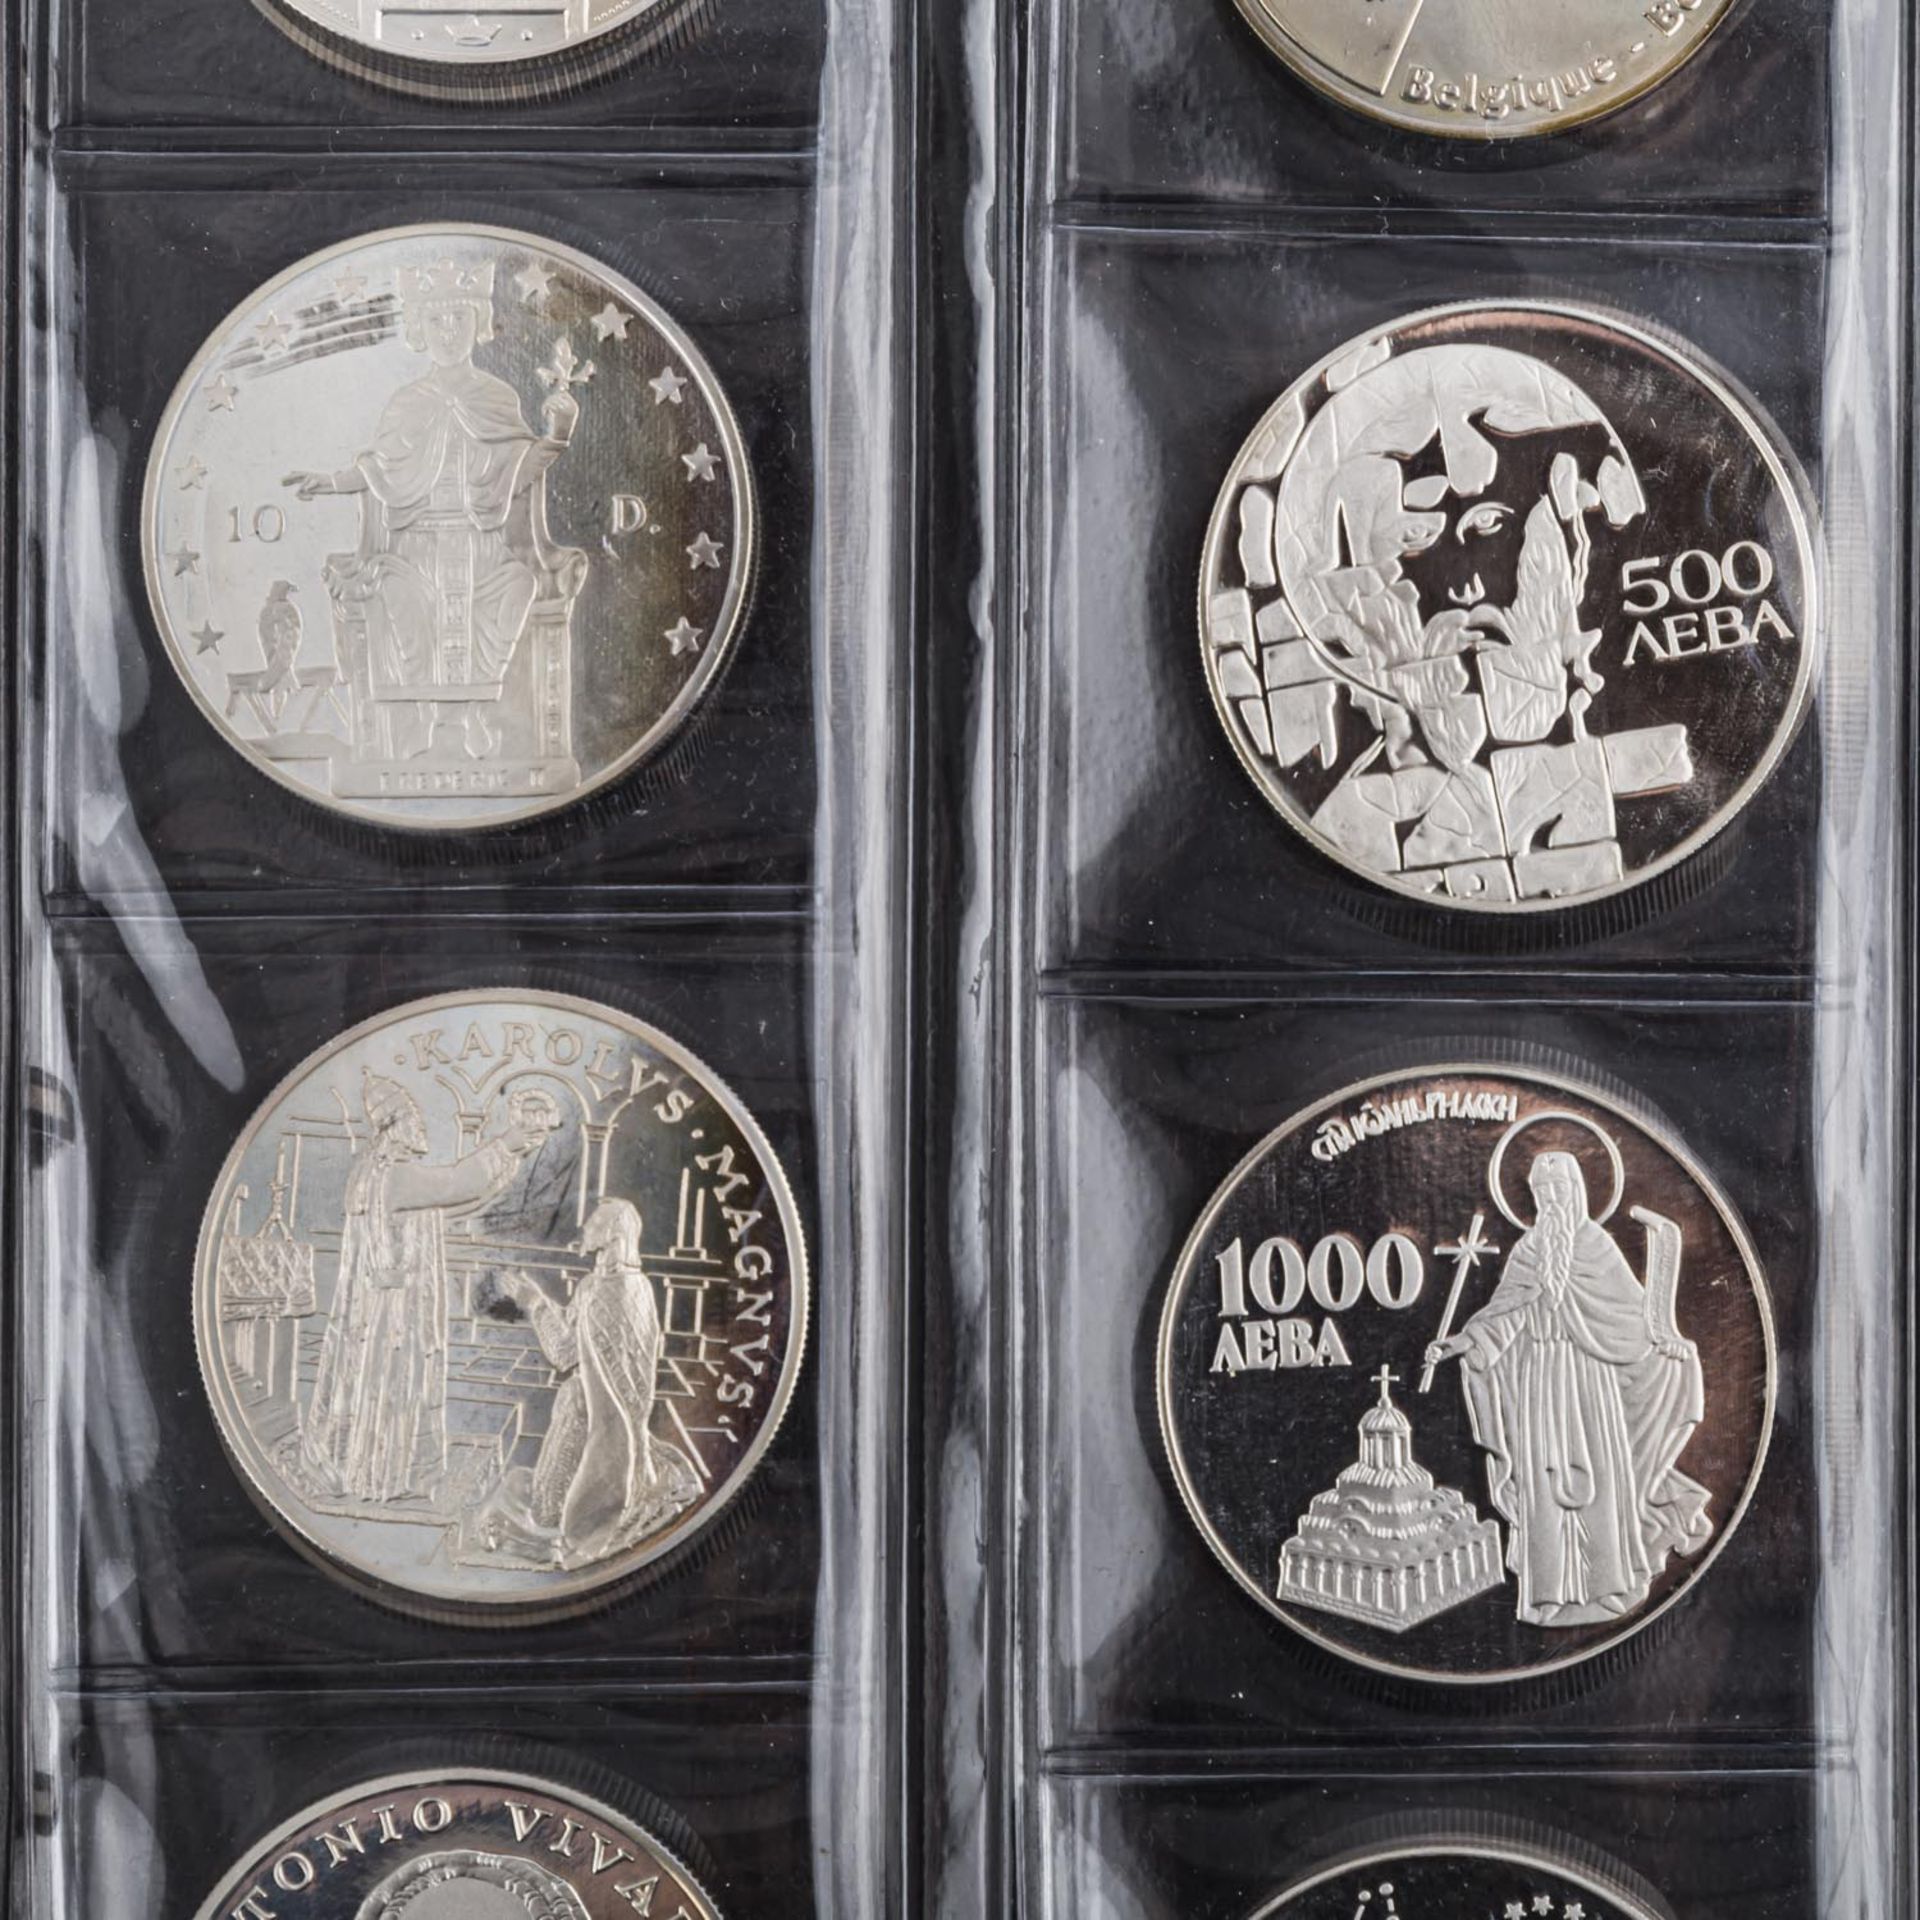 ECU Sammlung in überwiegend Silber und CuNi,gespickt mit wenigen EURO Münzen u.a. 5 Euro 2018 - Bild 3 aus 7